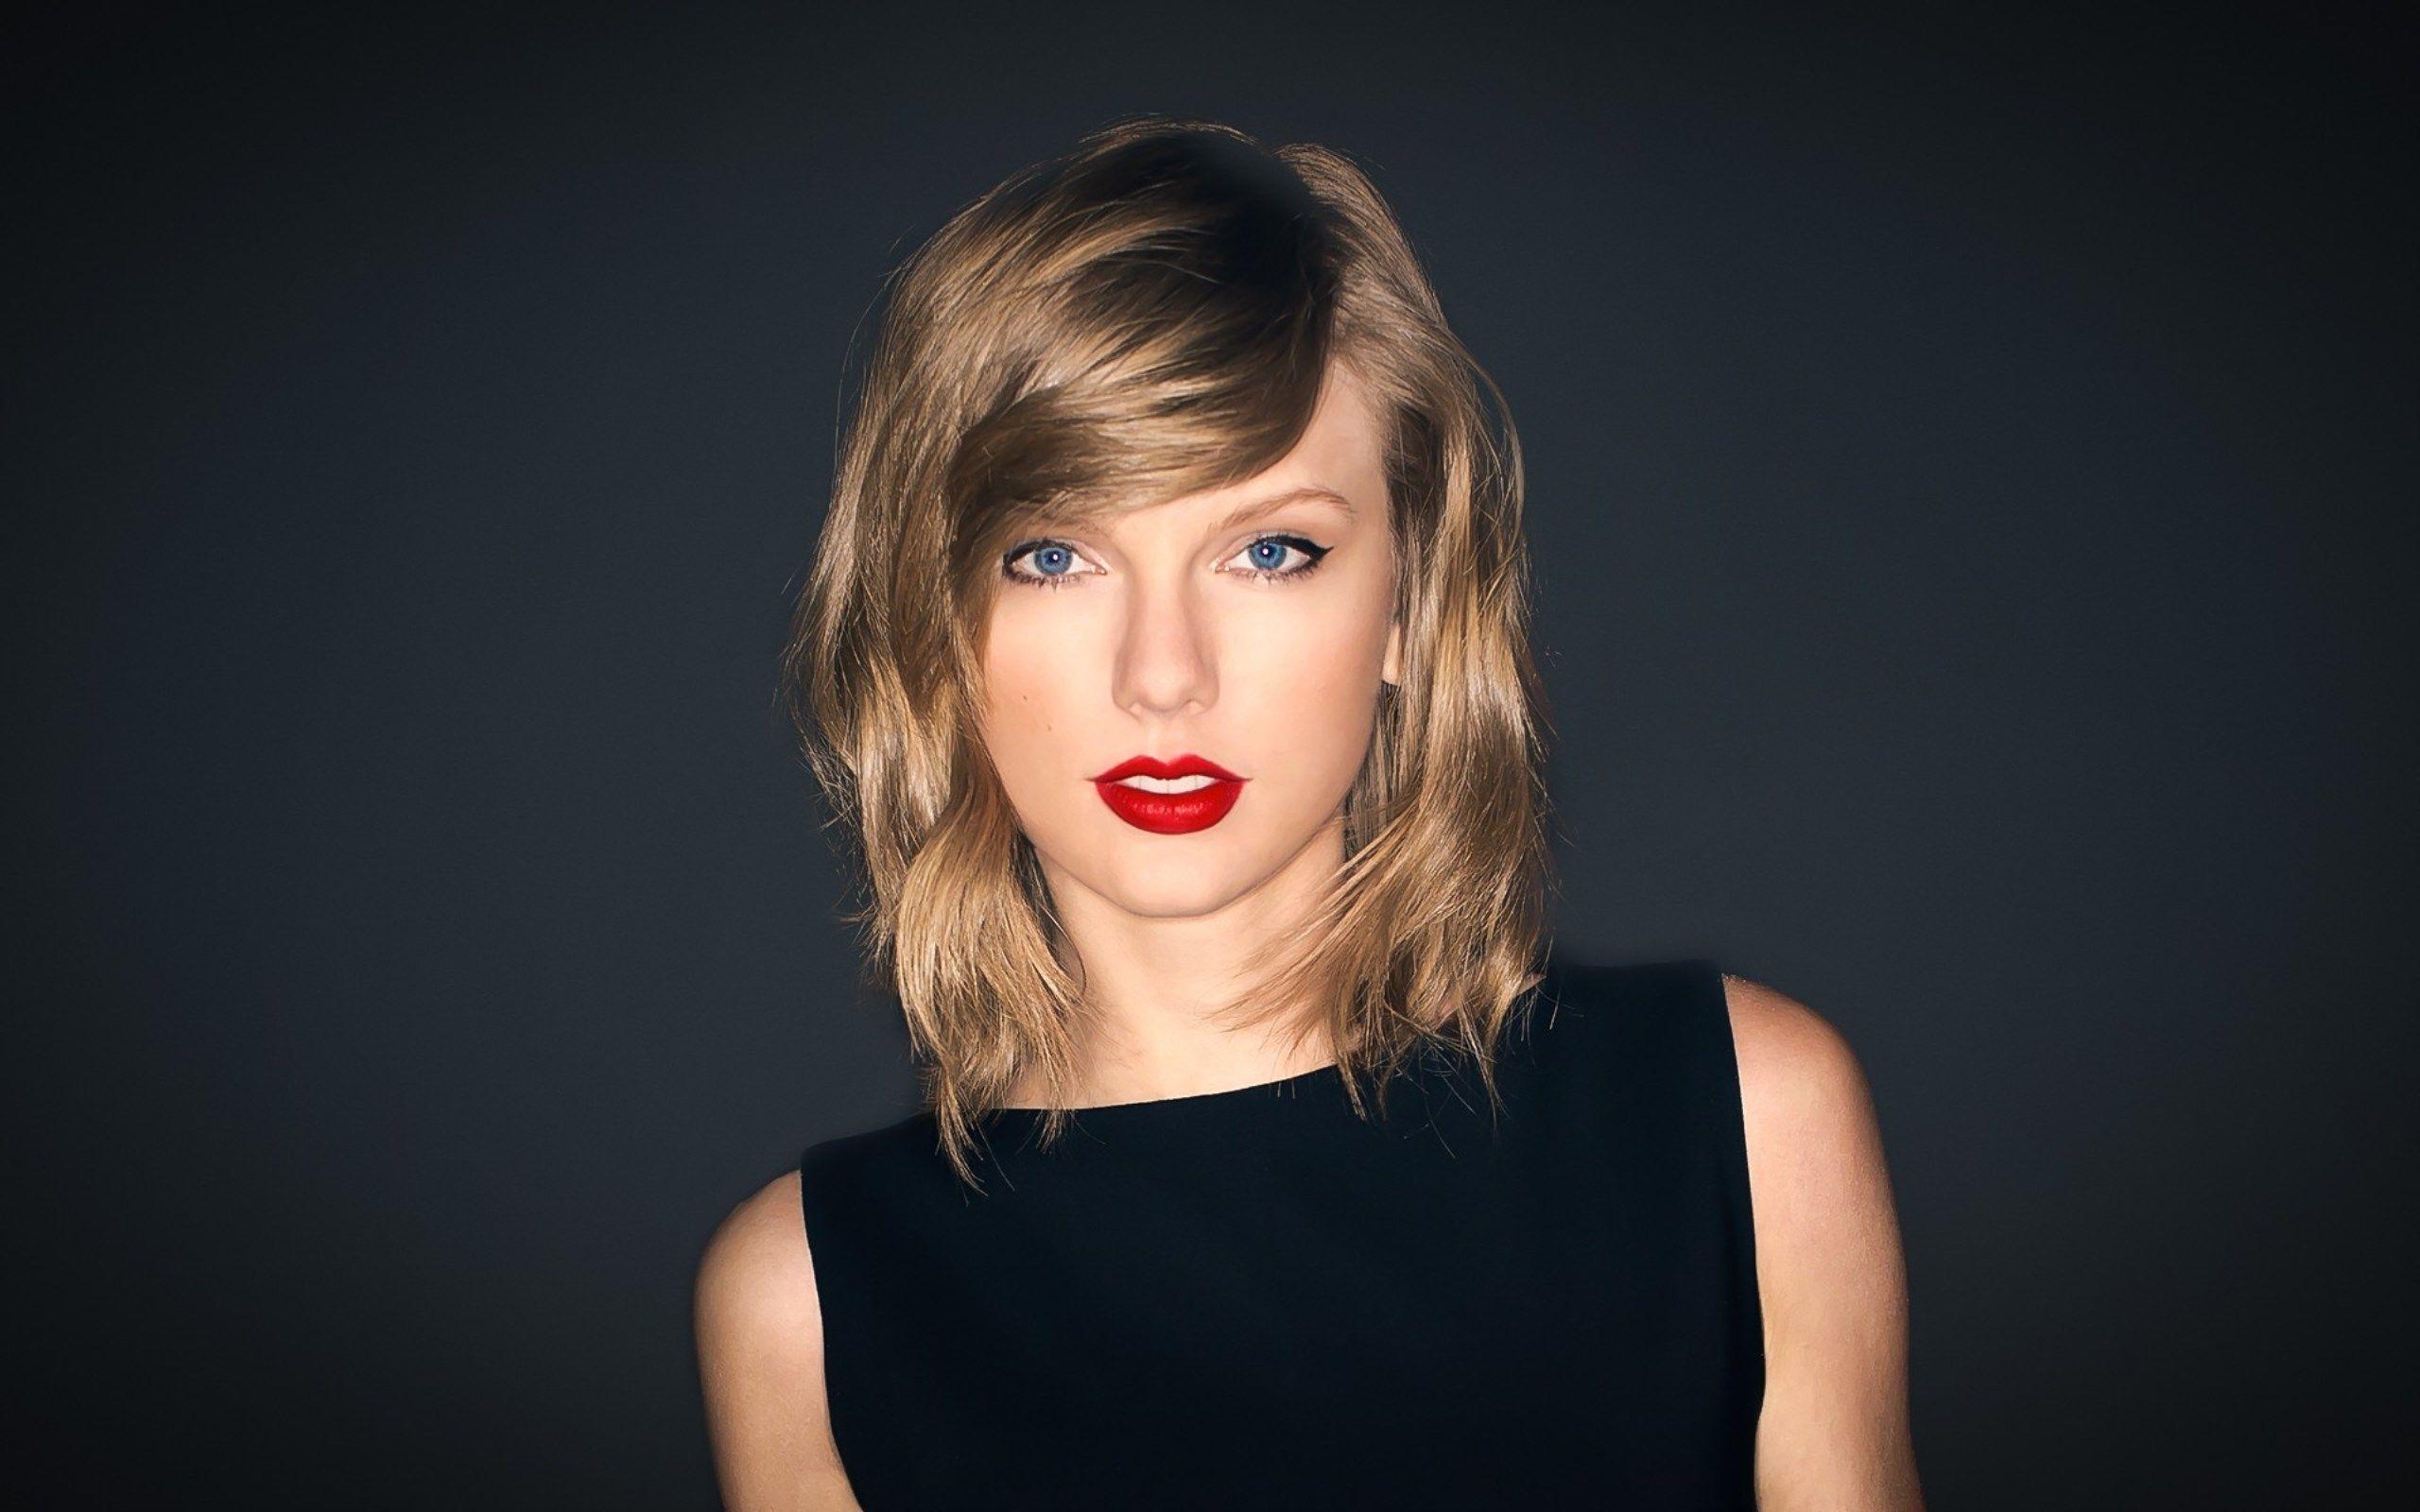 Taylor Swift 2016 Wallpaper, Taylor Swift 2016 Wallpaper in HQ